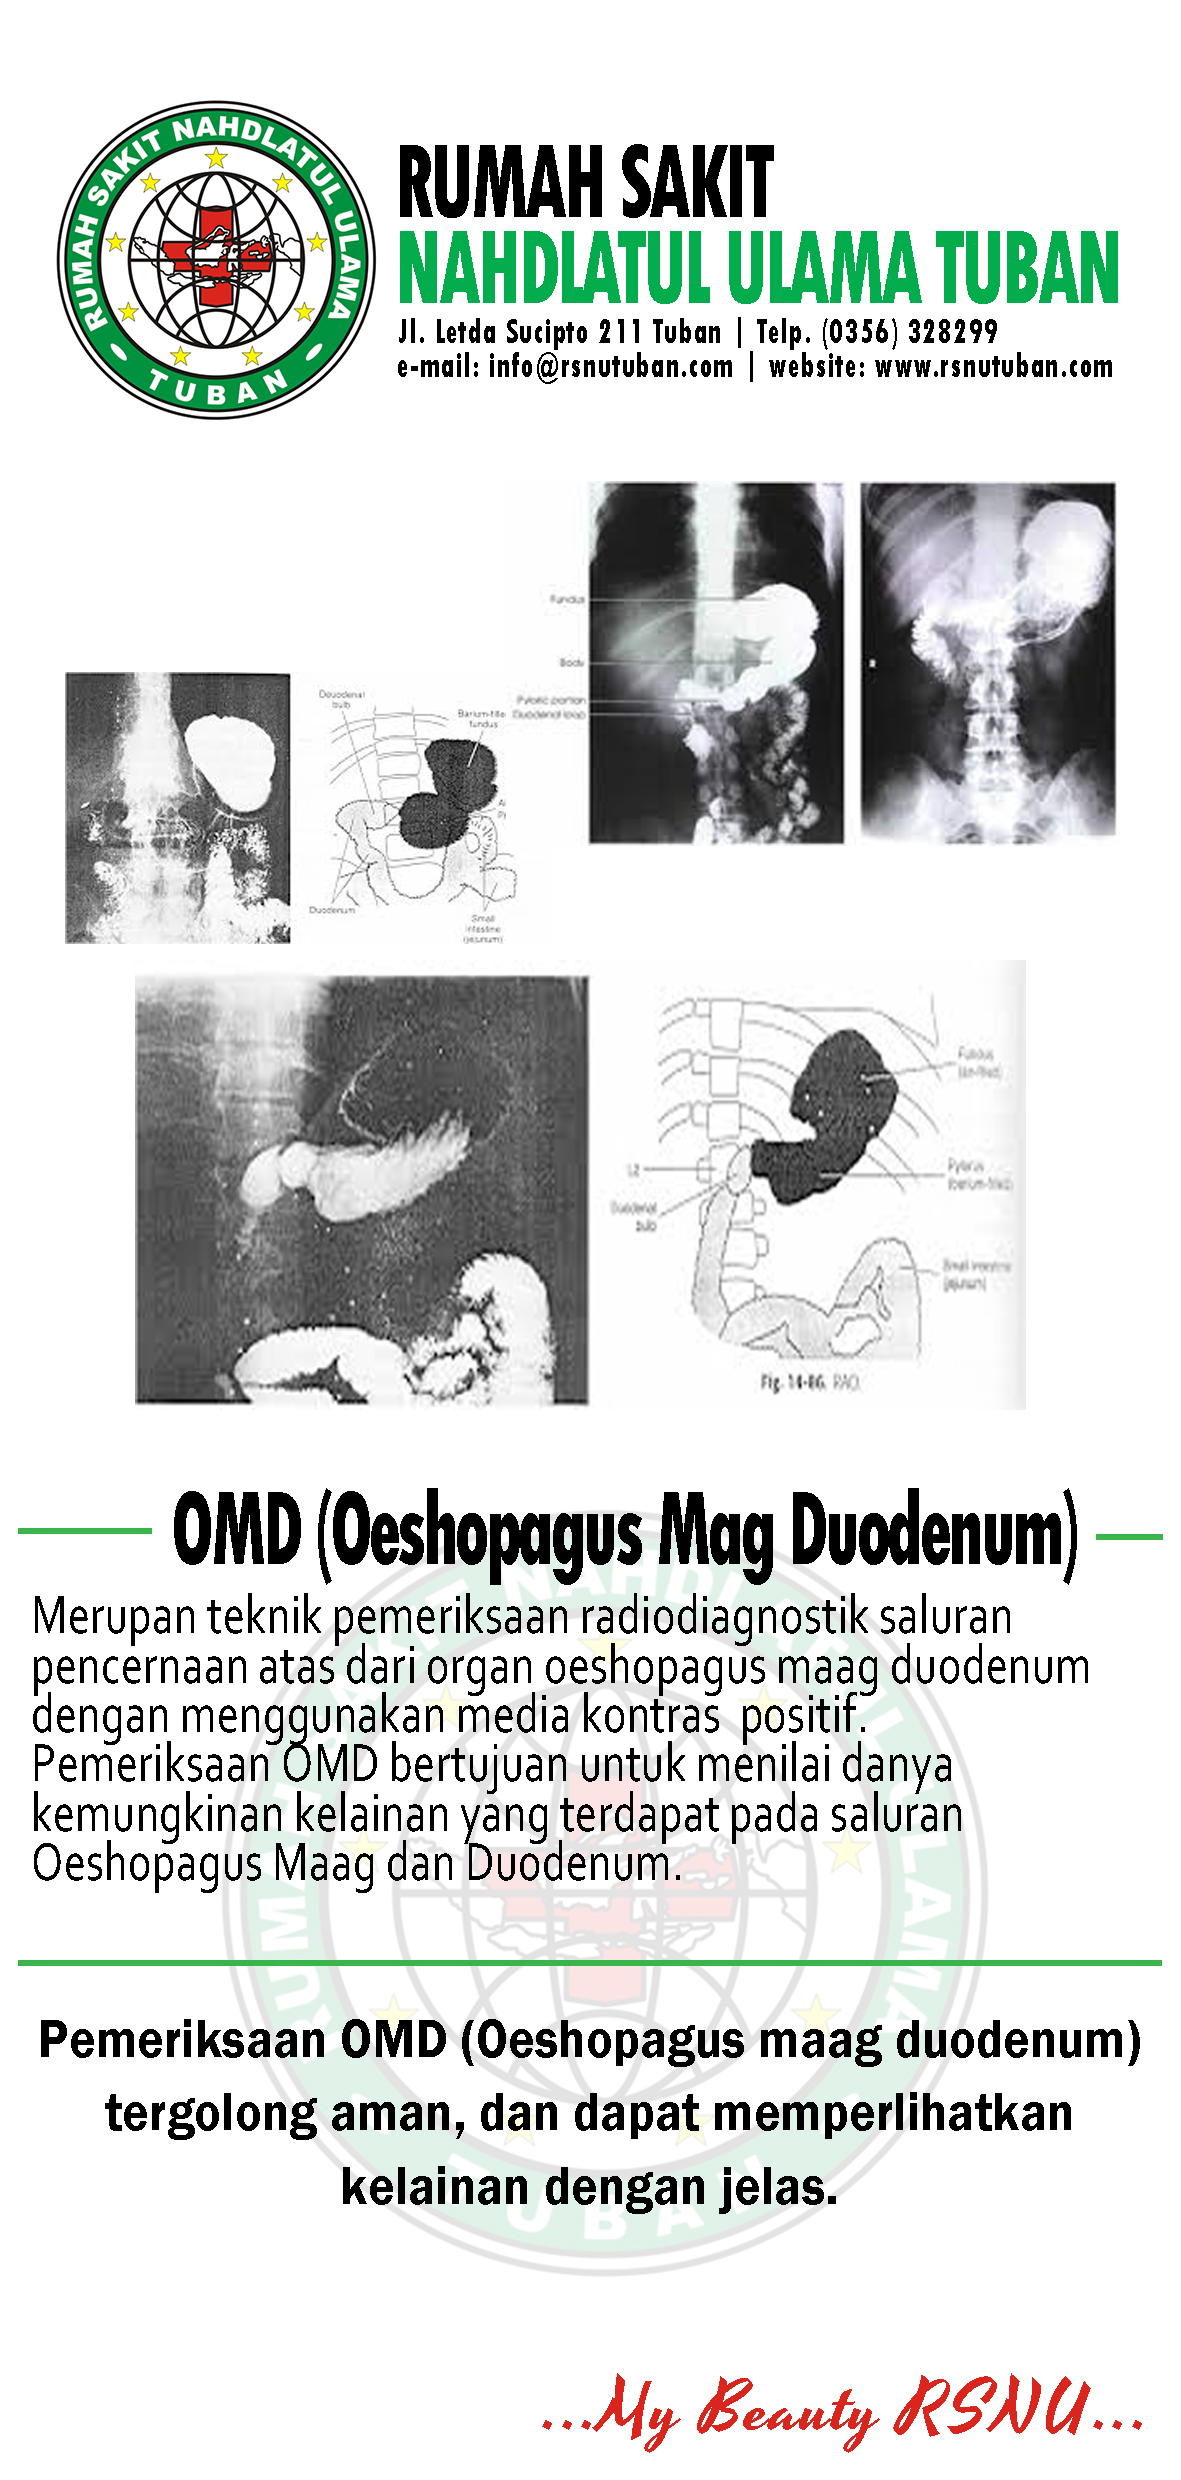 Brosur Oeshopagus Mag Duodenum - RSNU Tuban